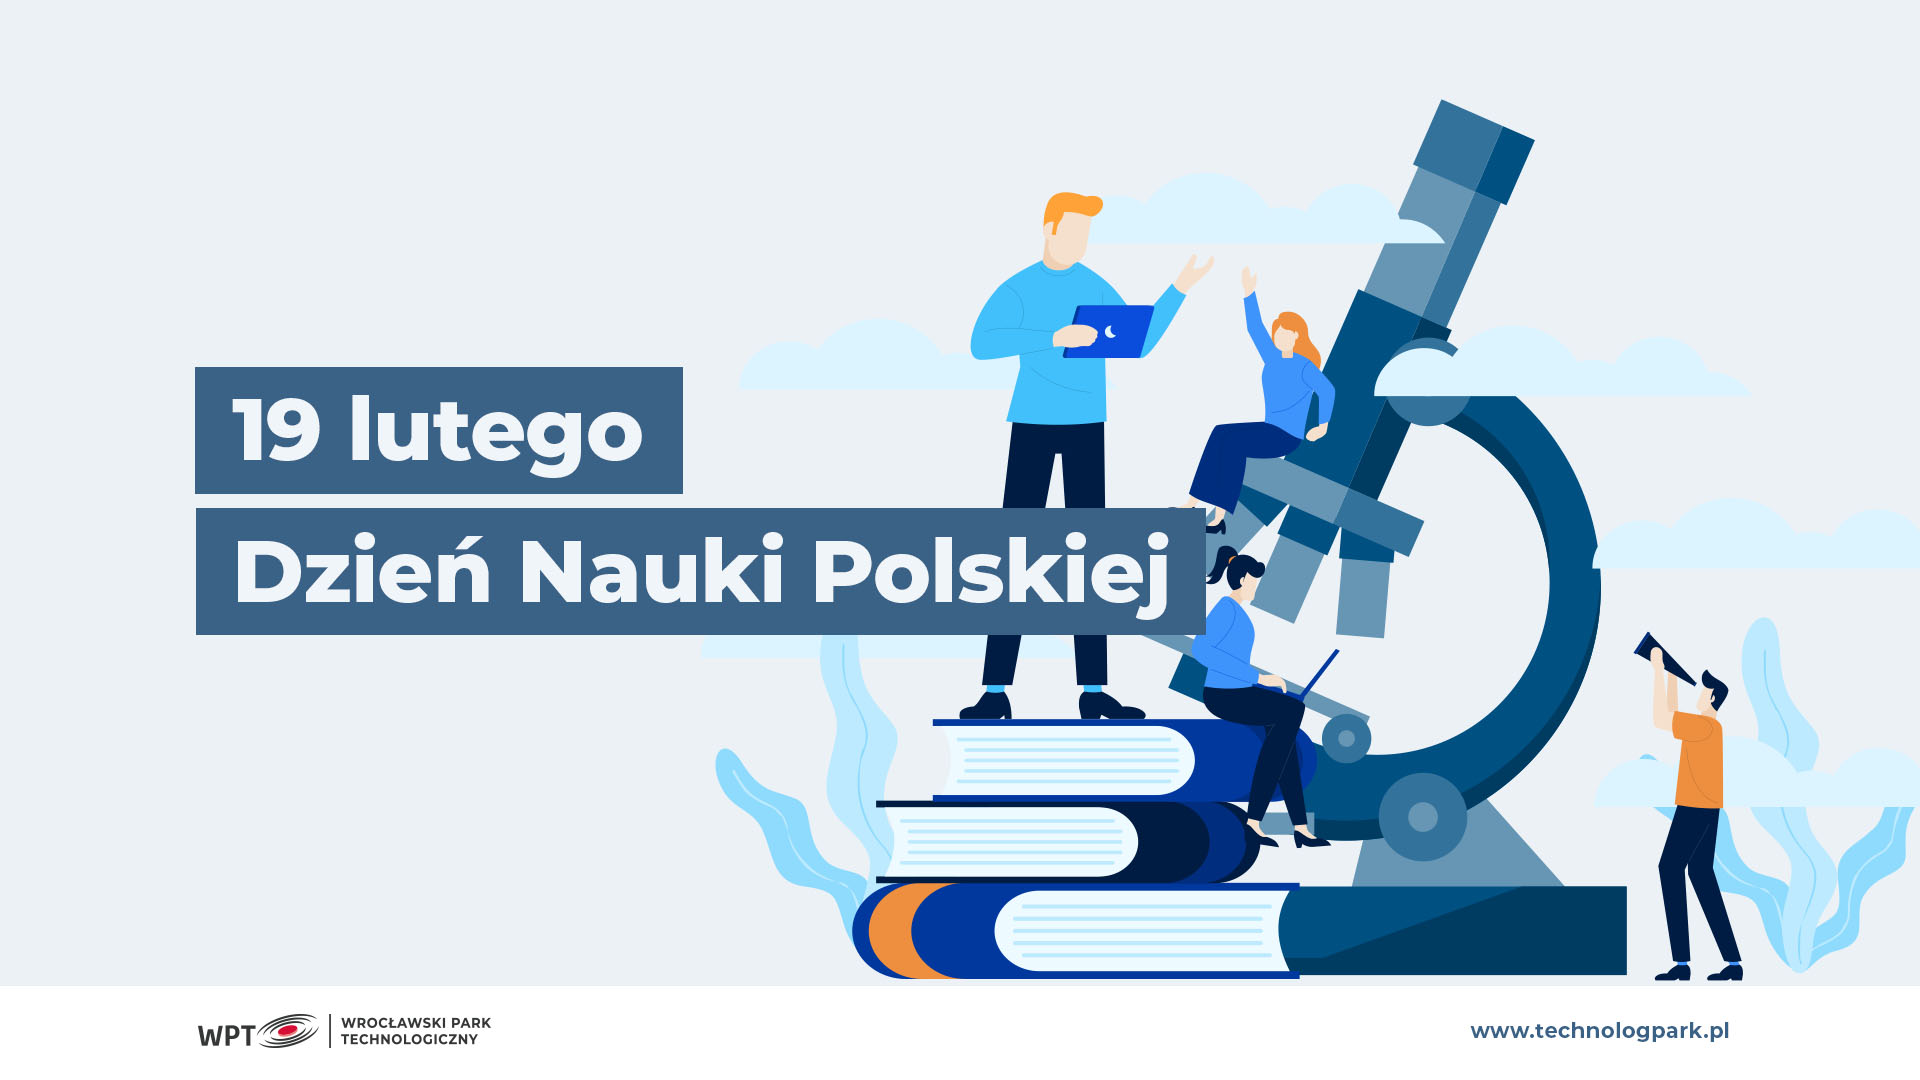 19.II – Dziś Dzień Nauki Polskiej! Jak łączy się ona z biznesem i innowacjami?